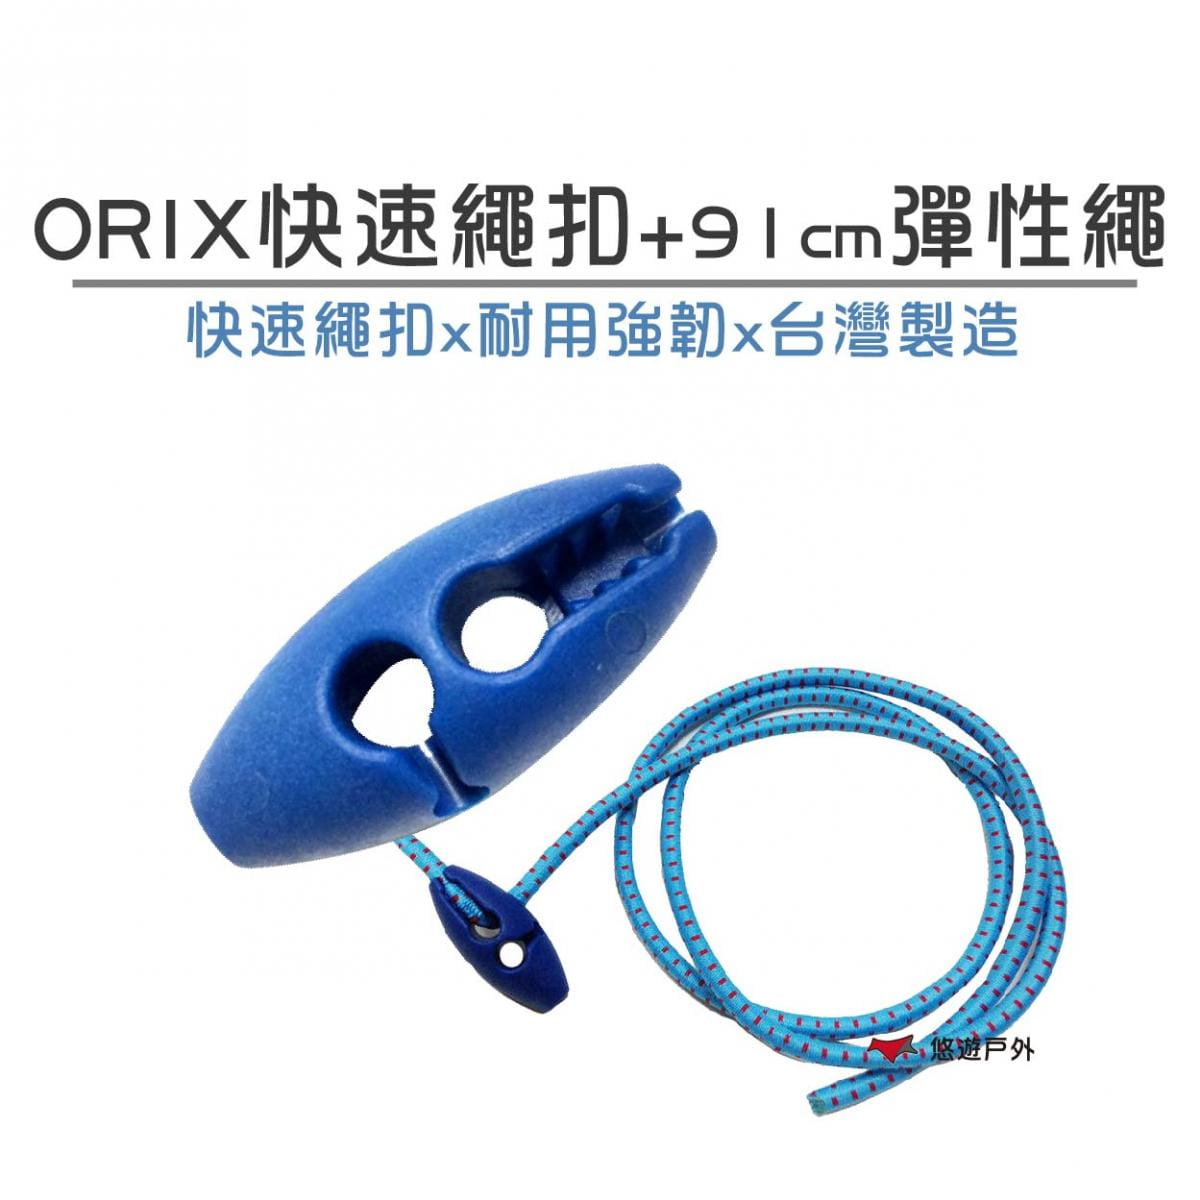 【ORIX】 快速繩扣+91公分彈性繩 (悠遊戶外) 0